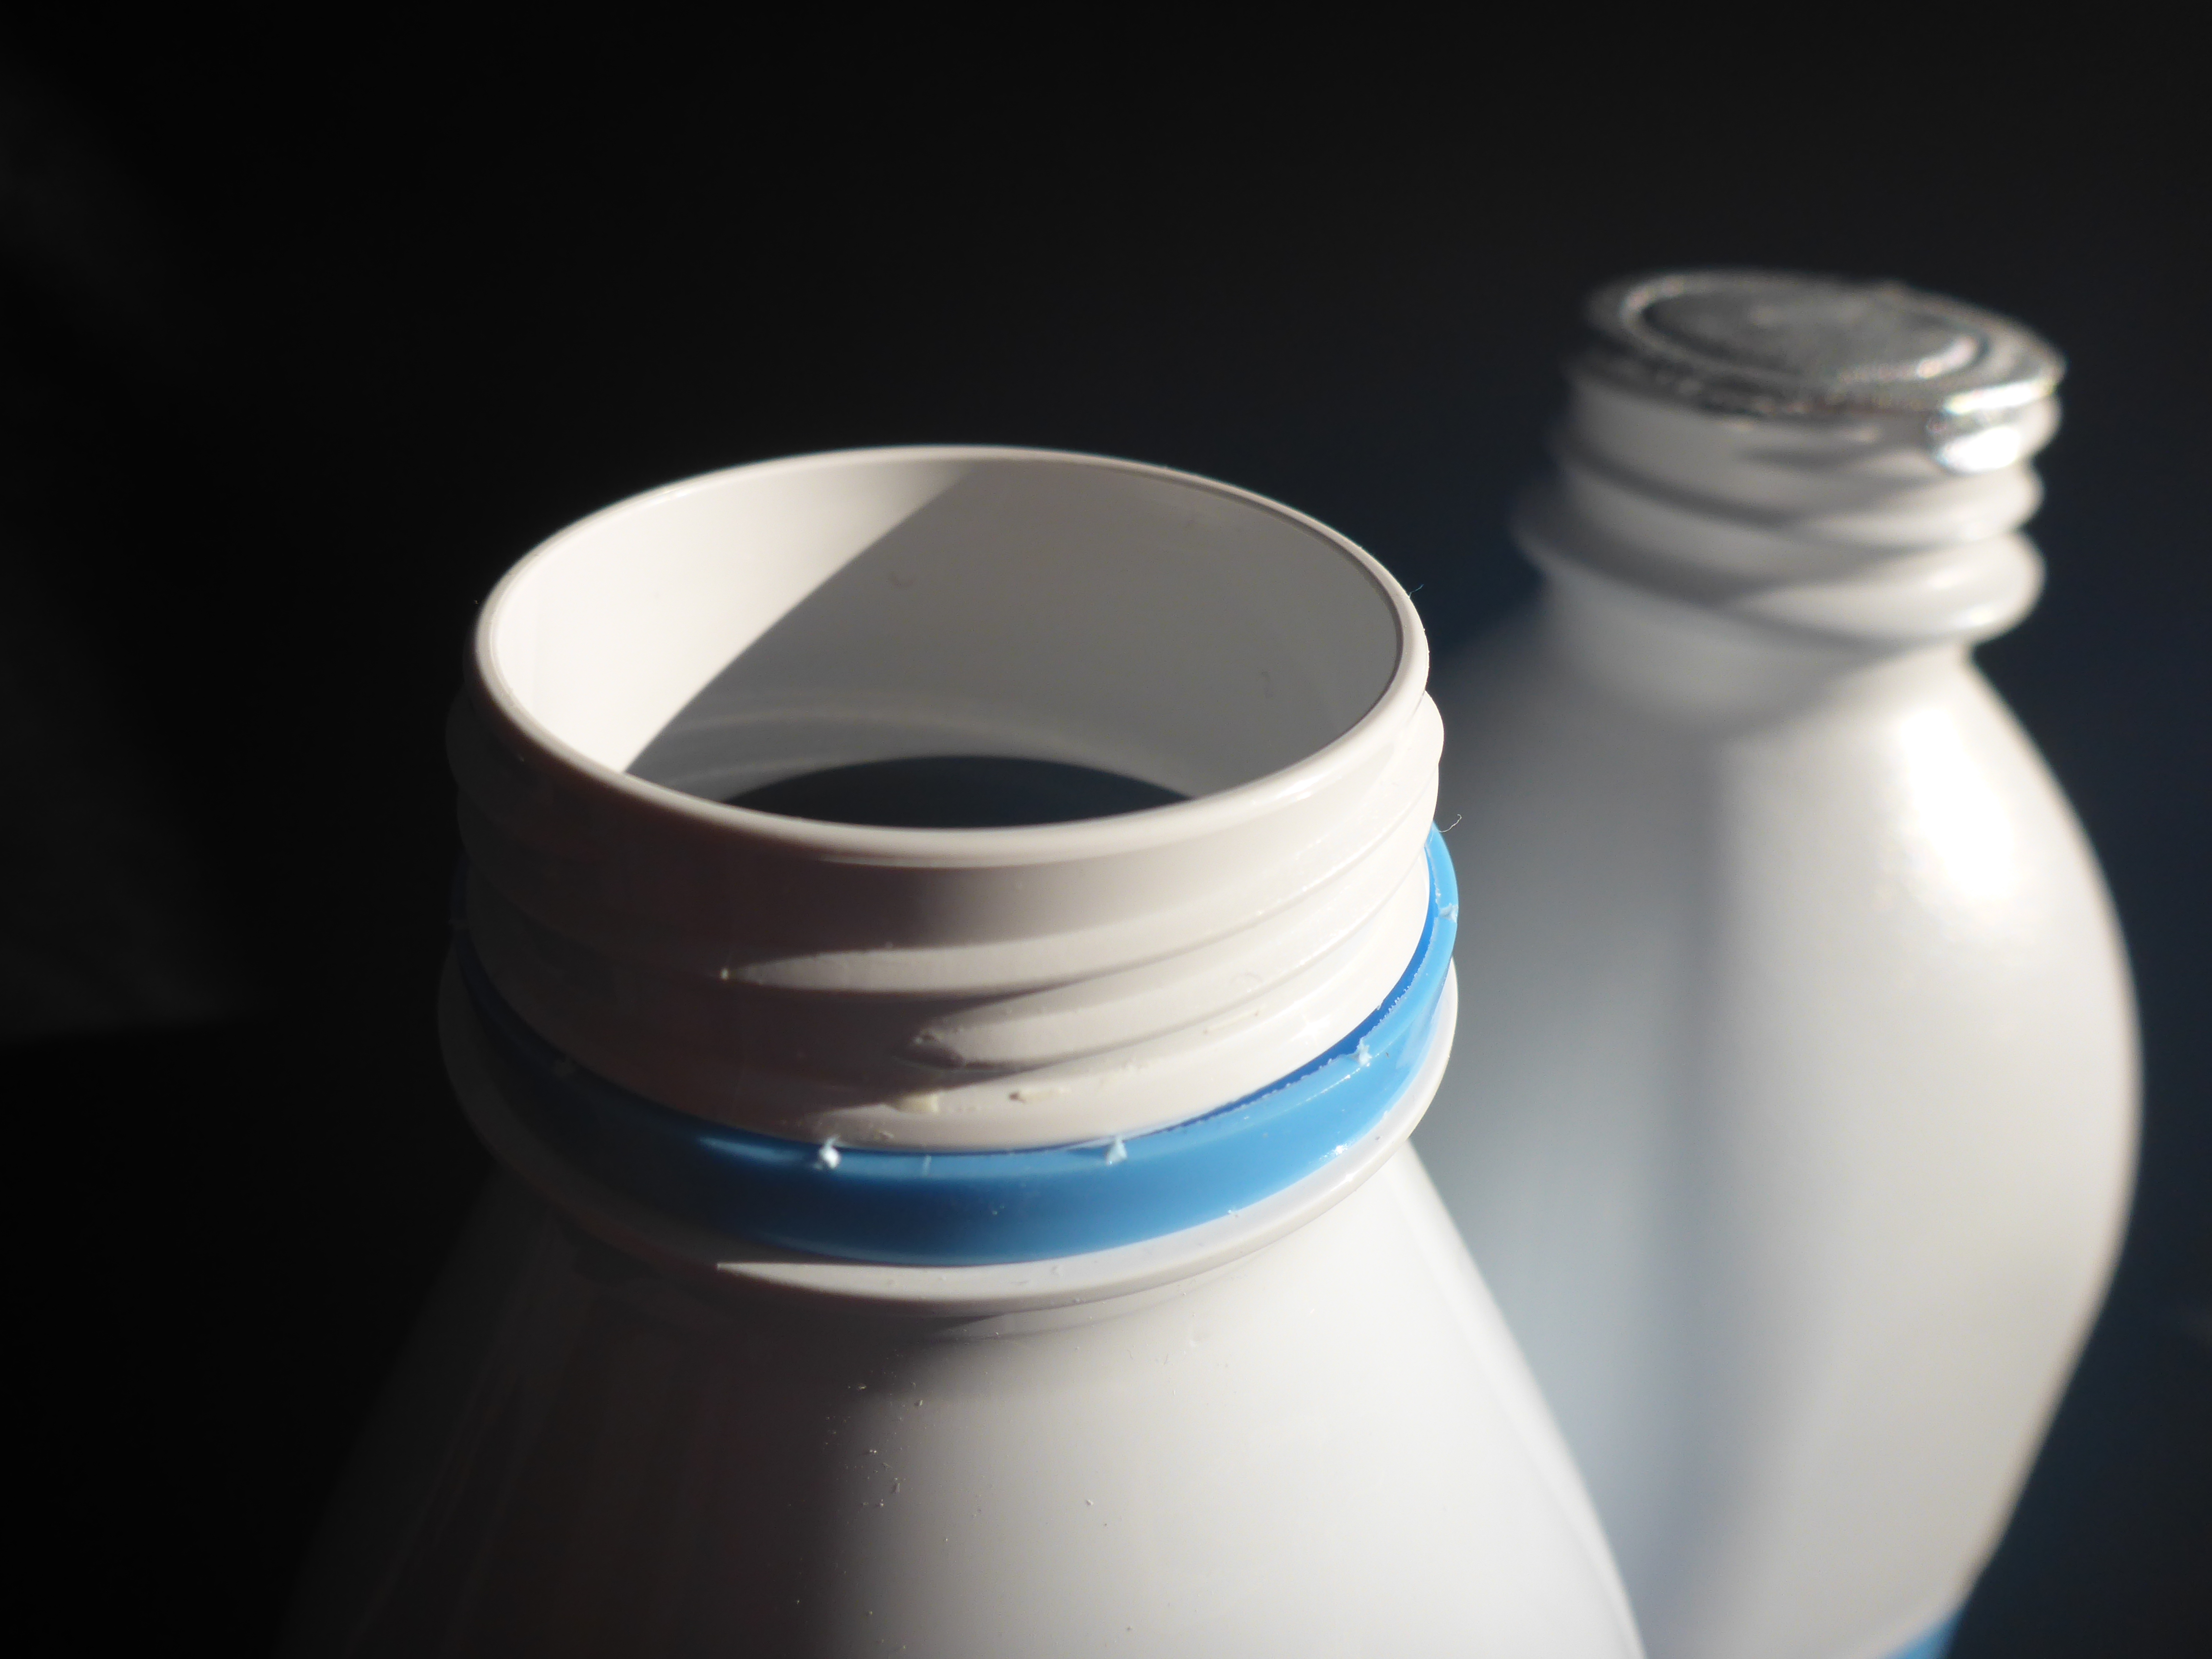 Des bouteilles de lait se laissent griser par le PET opaque